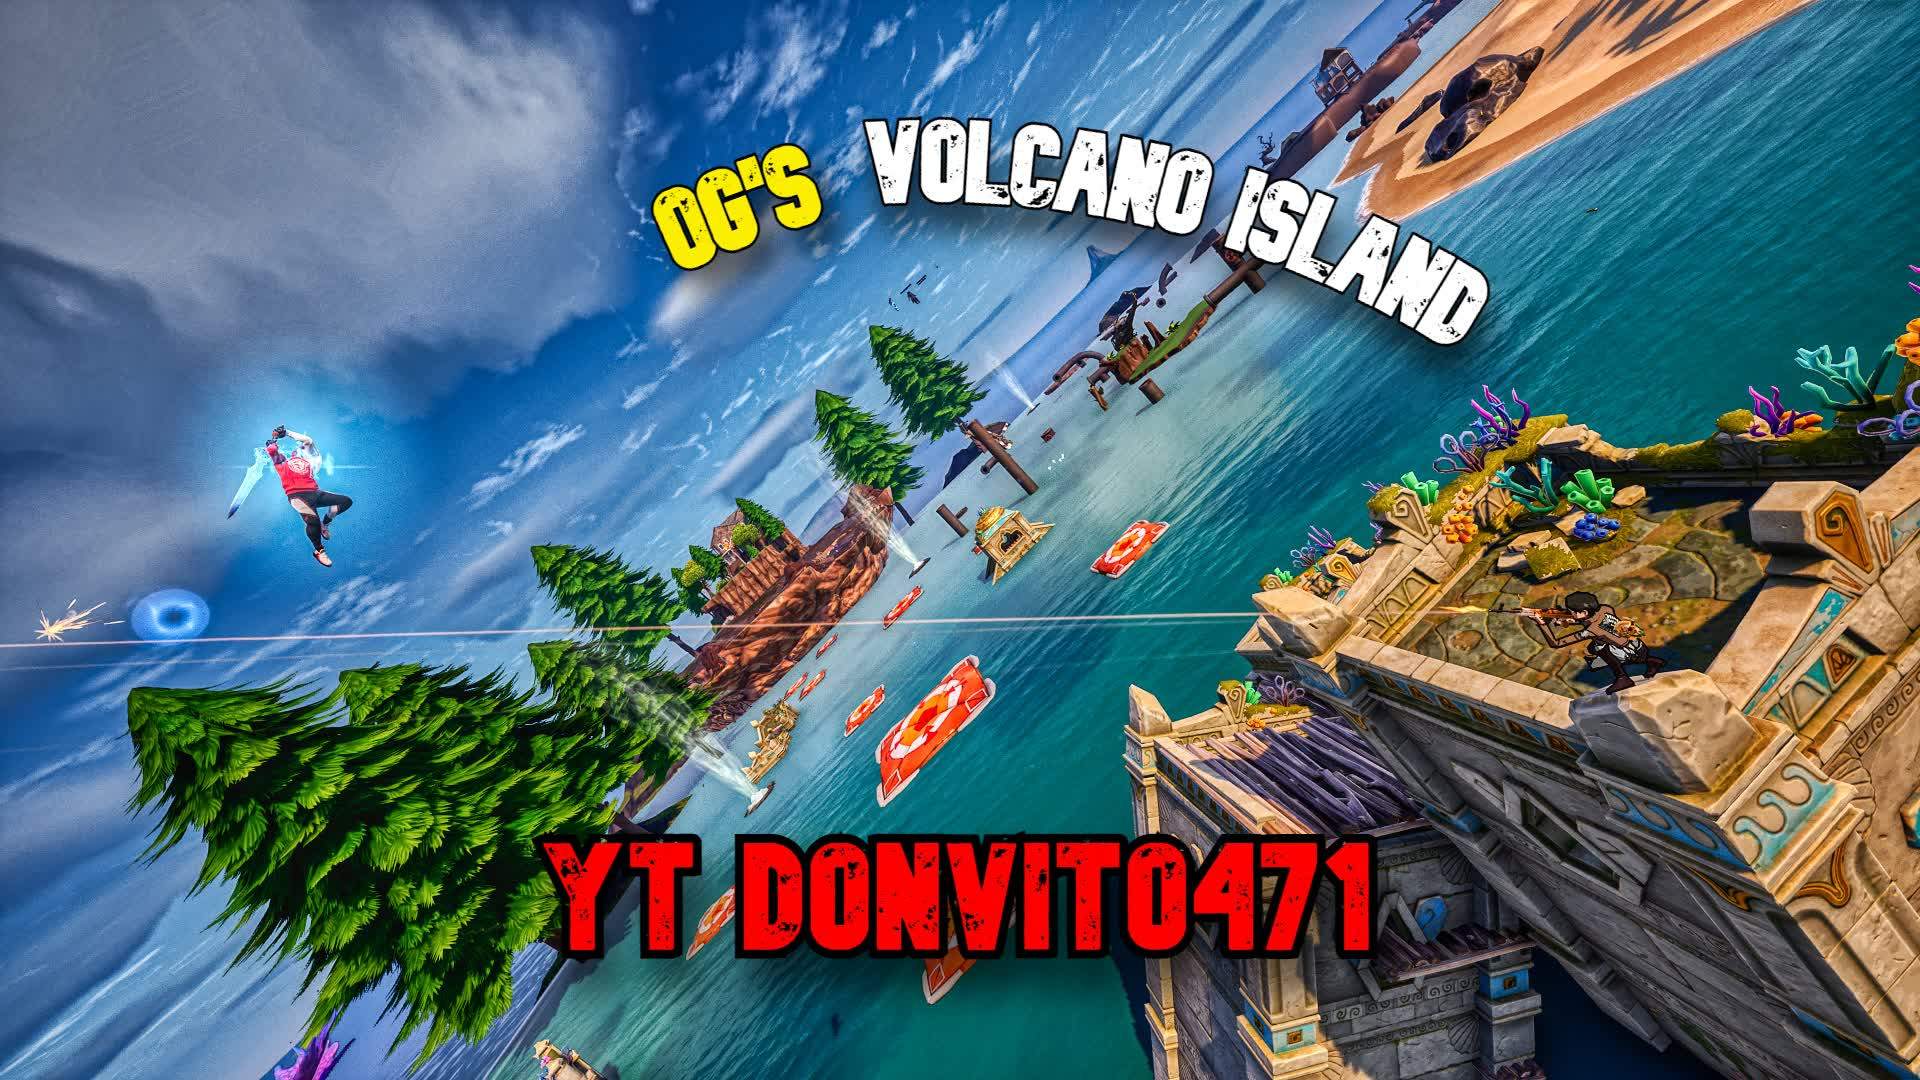 OG's Volcano Island Team PVP 2.0